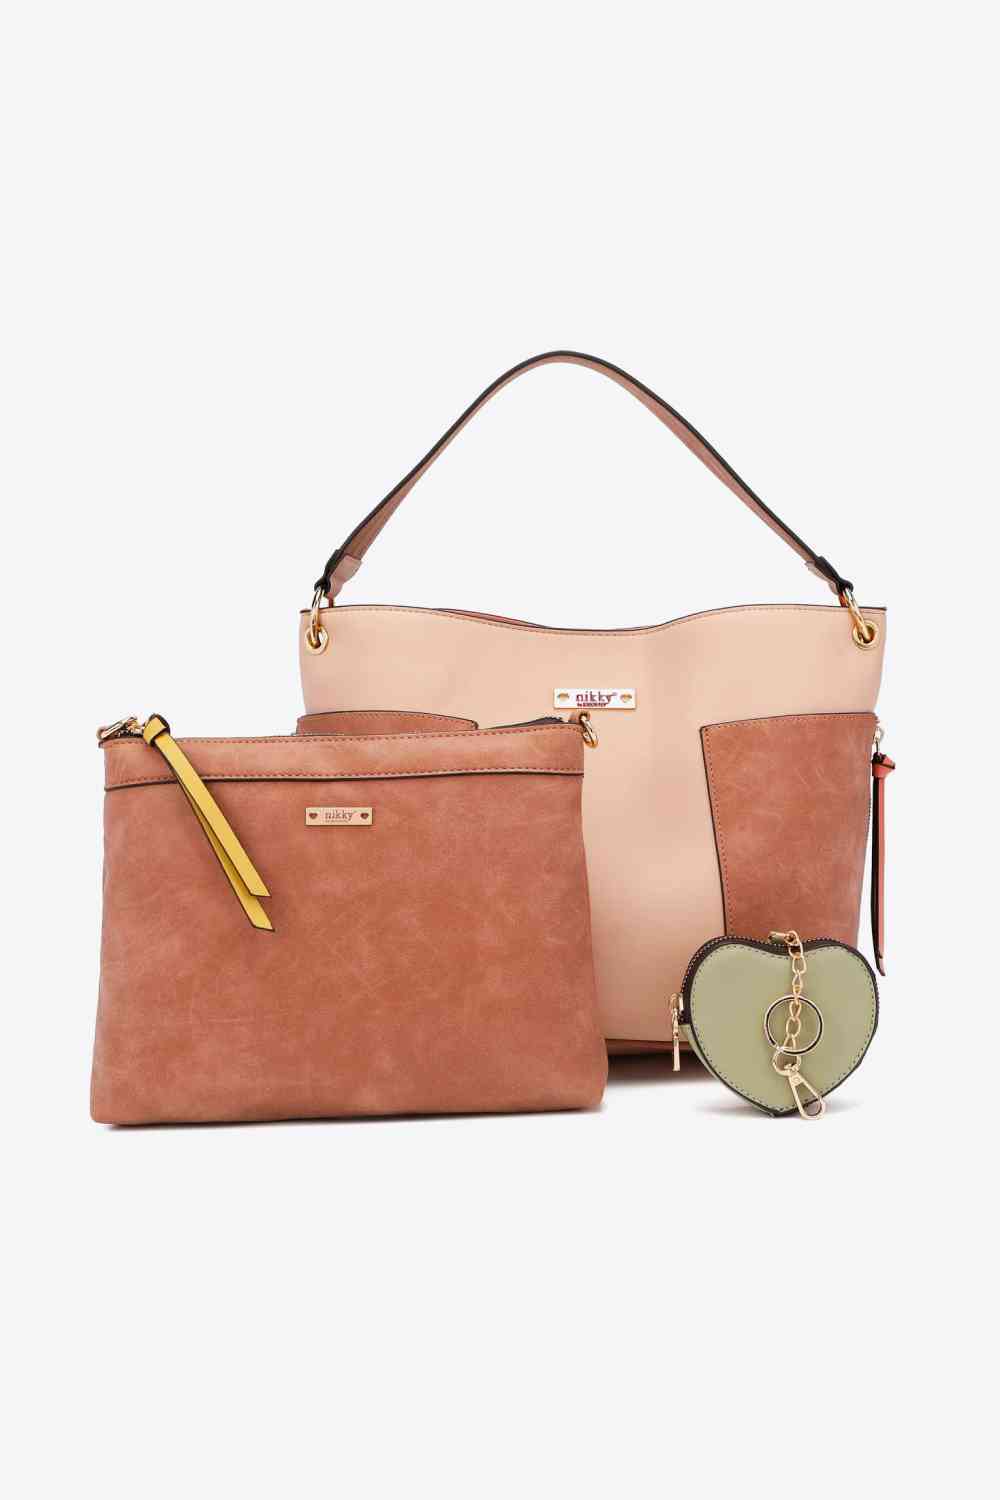 Nicole Lee USA Sweetheart Handbag Set Dusty Pink One Size 